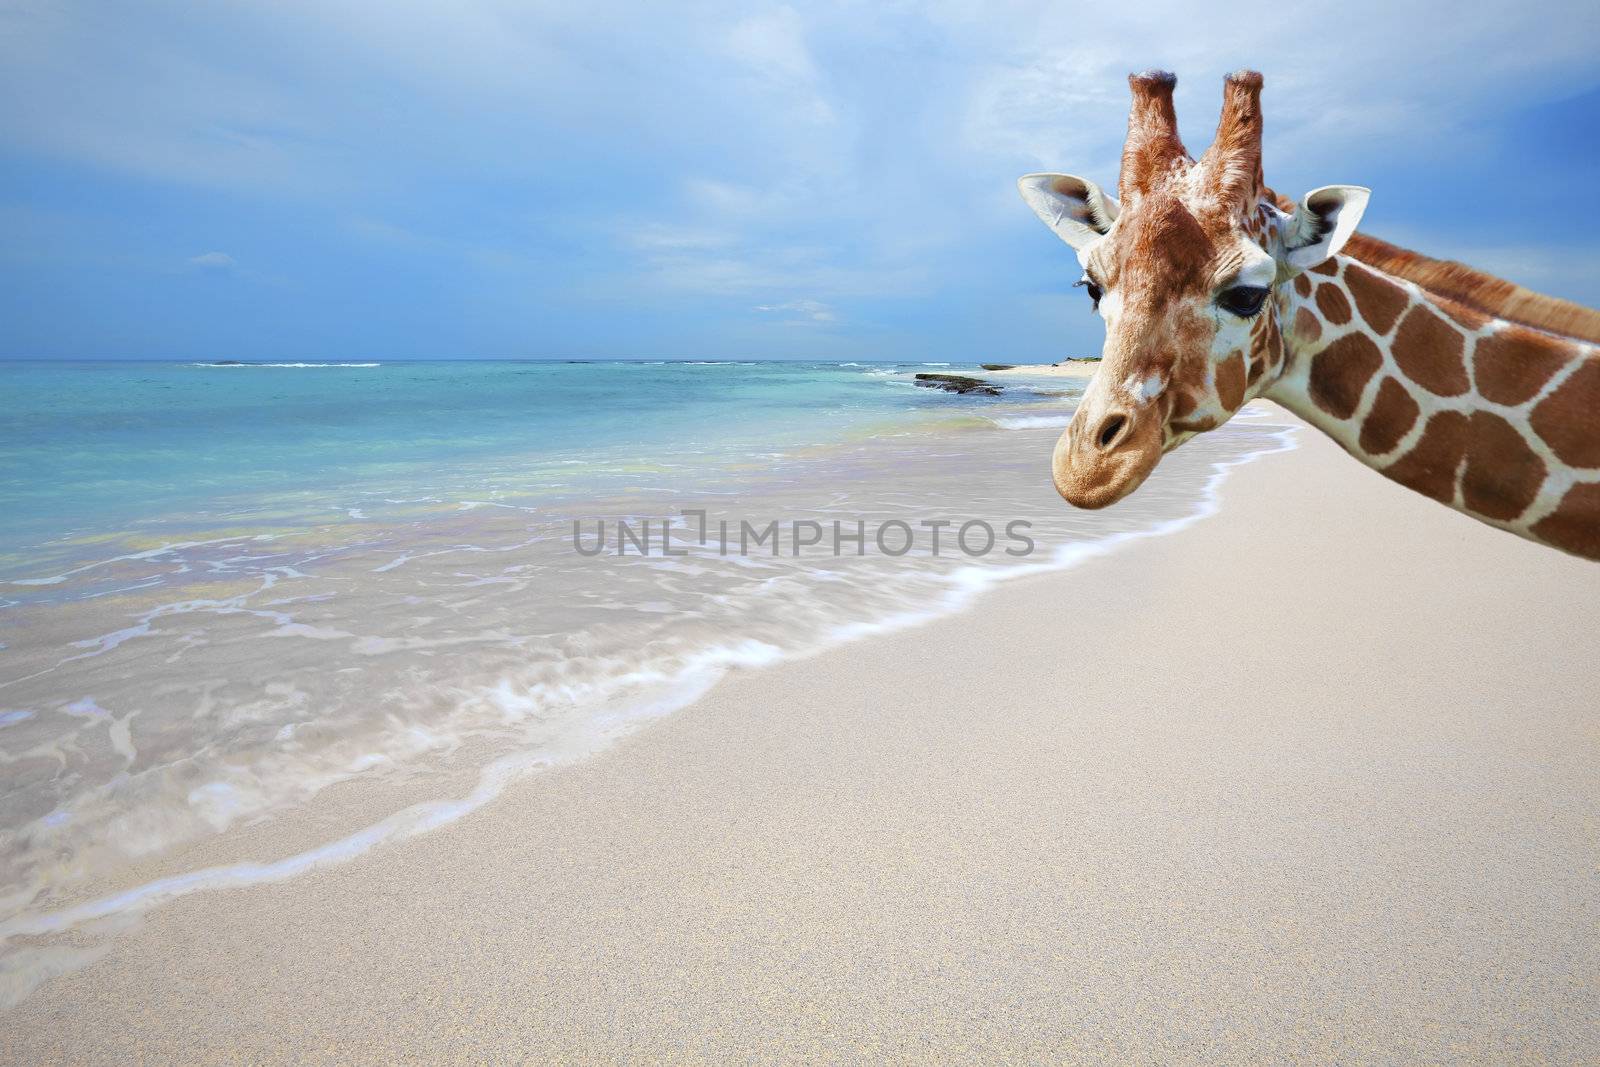 Giraffe on vacation by kjorgen